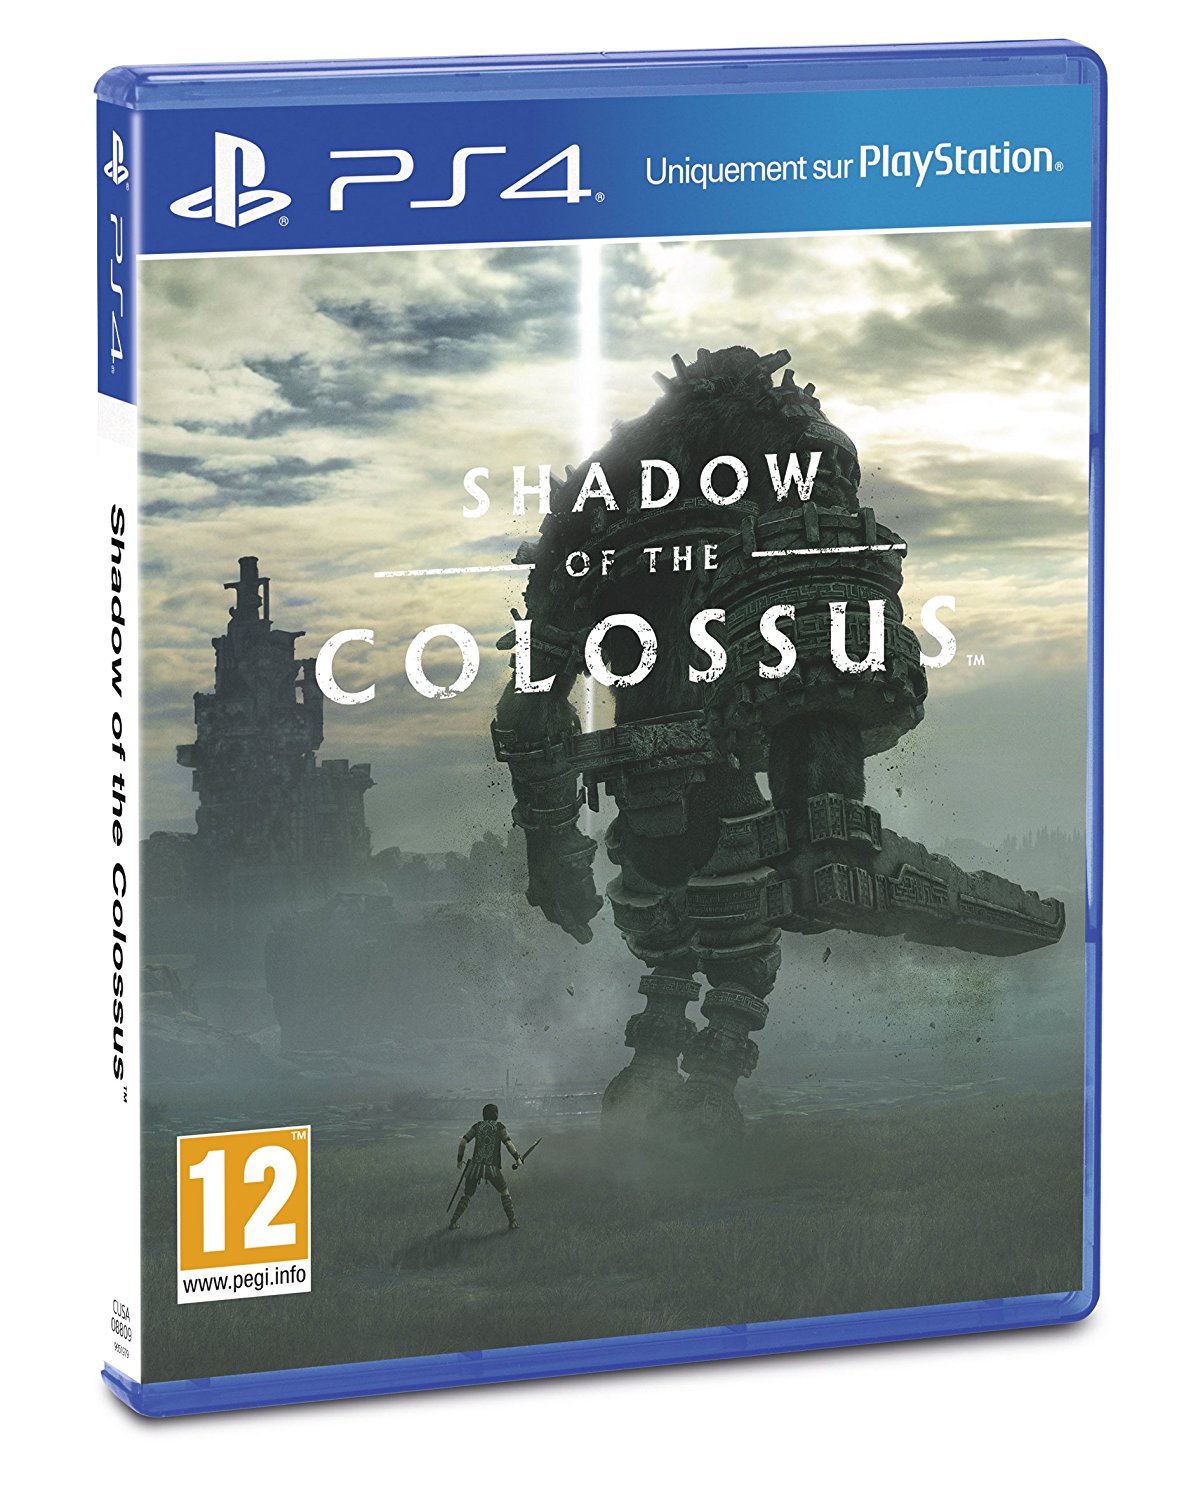 Jeu PS4 pas cher Shadow of the Colossus, Jeu vidéo Amazon